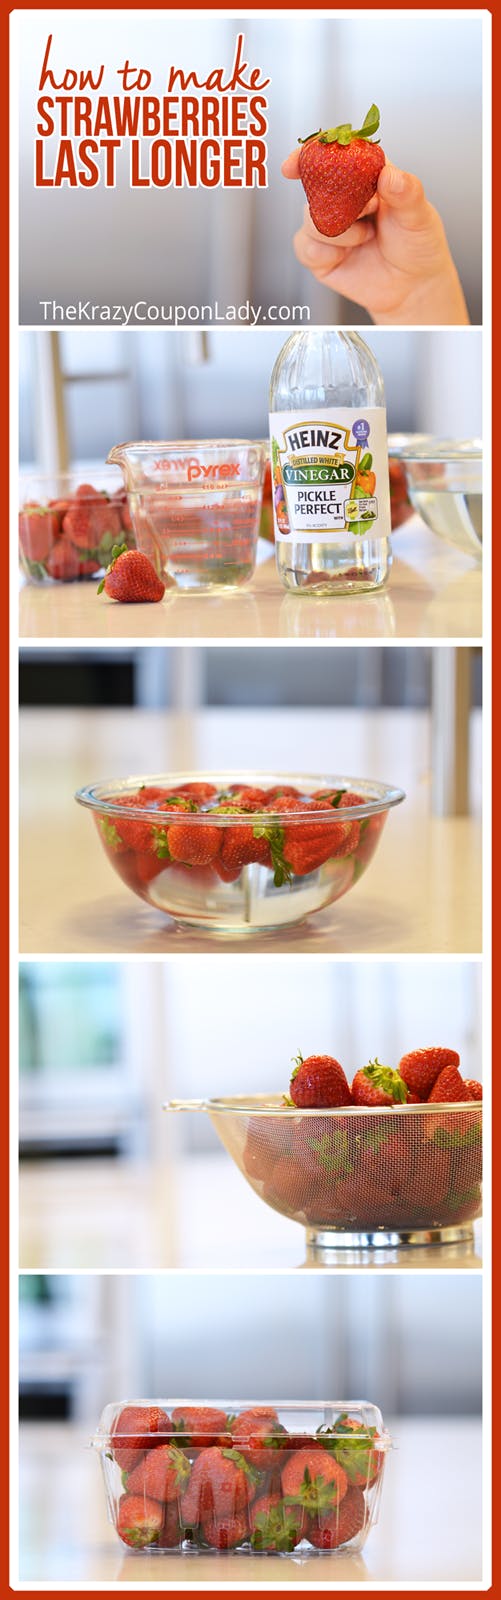 How to Make Strawberries Last Longer